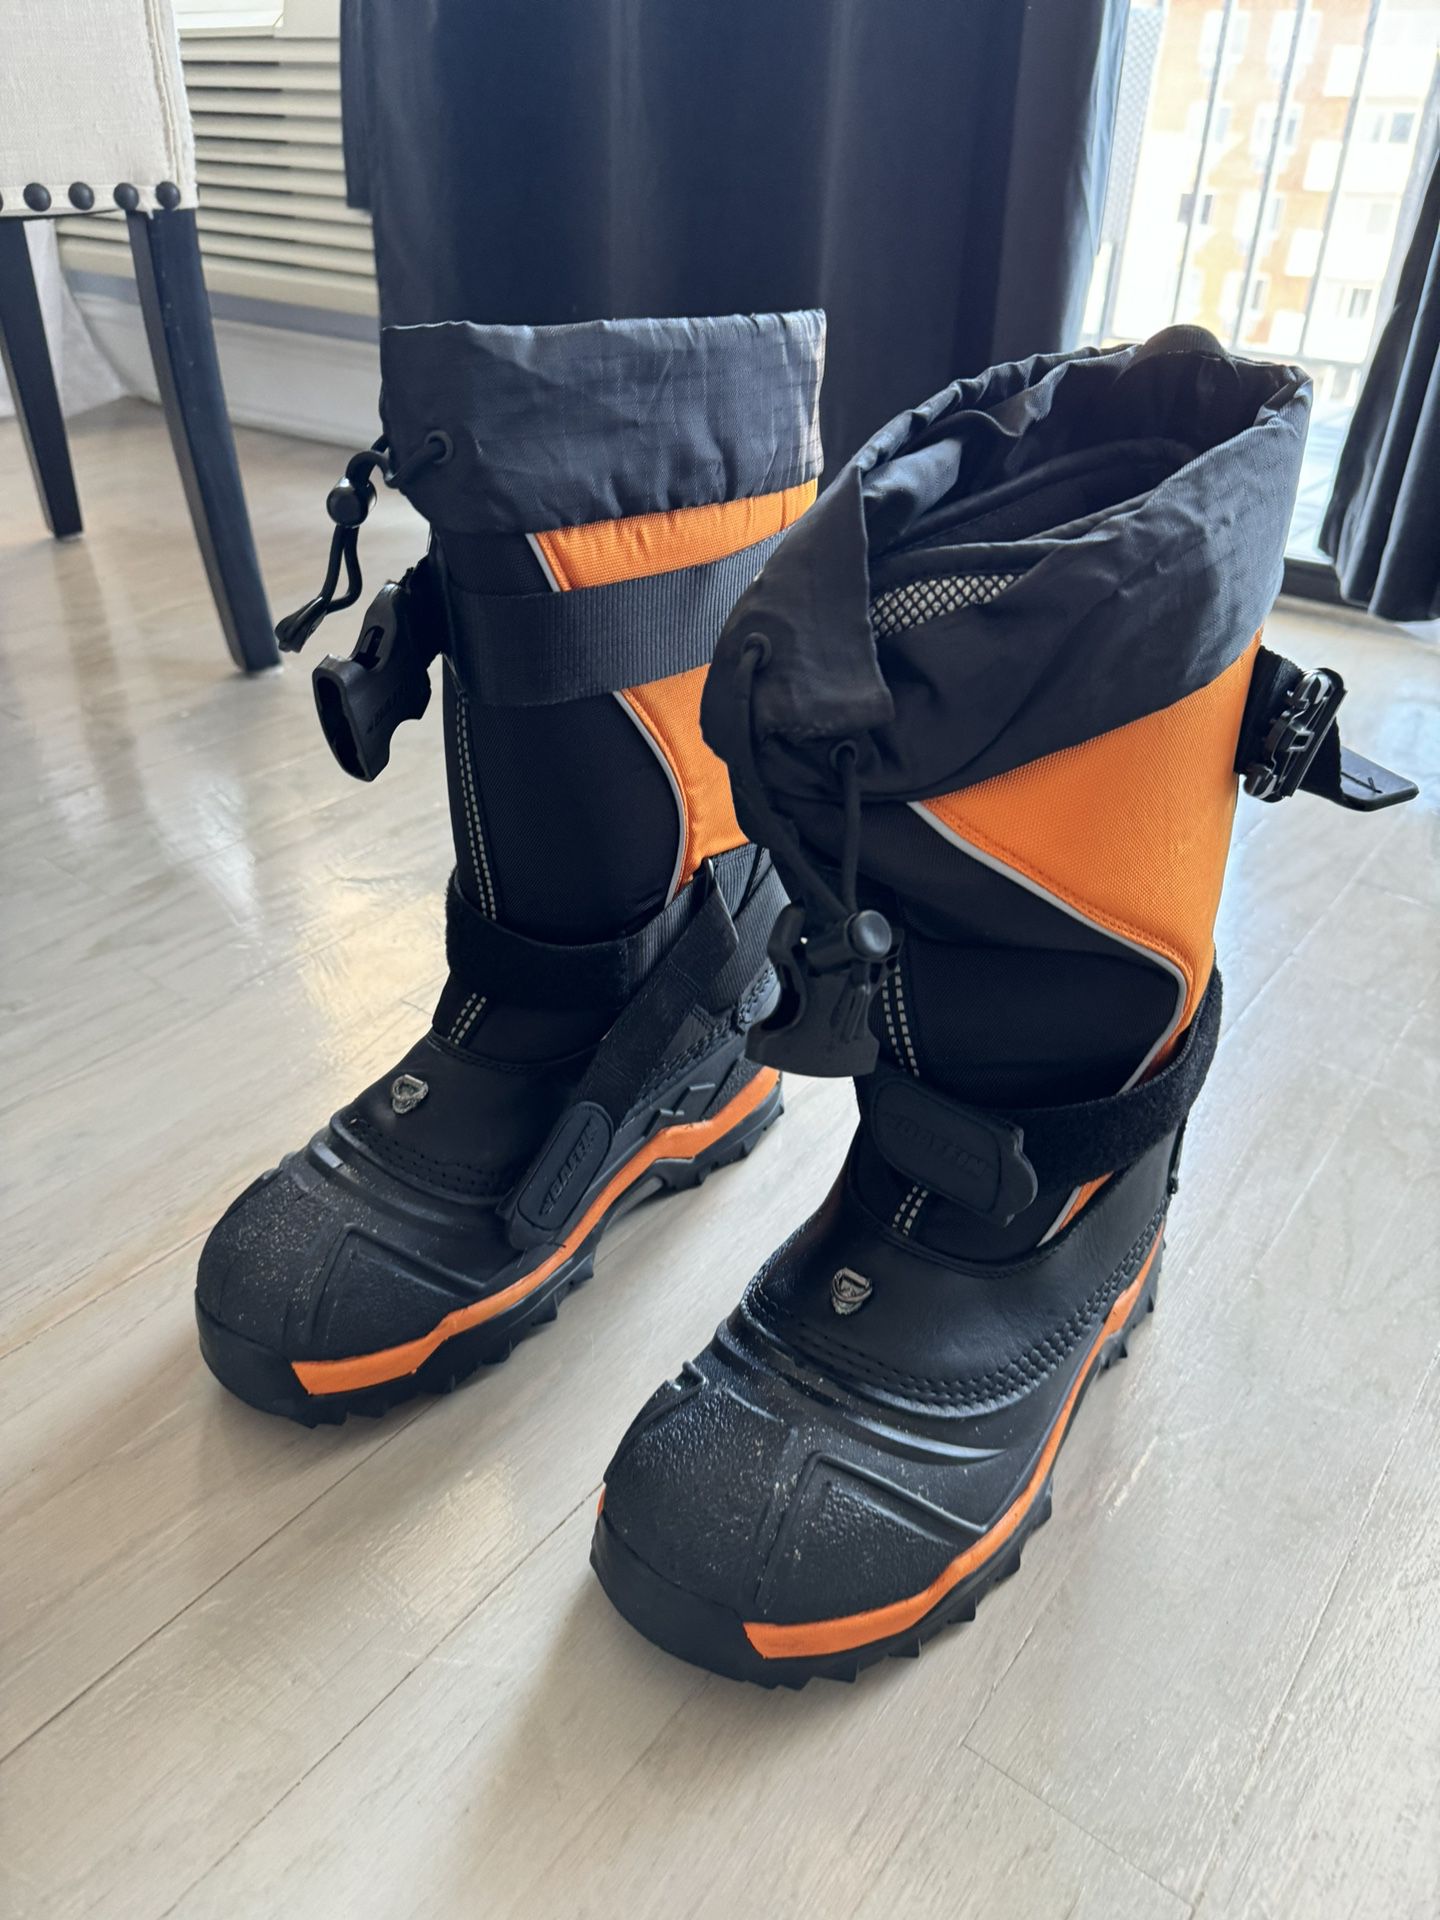 Baffin Men’s snow Boots Sz 9